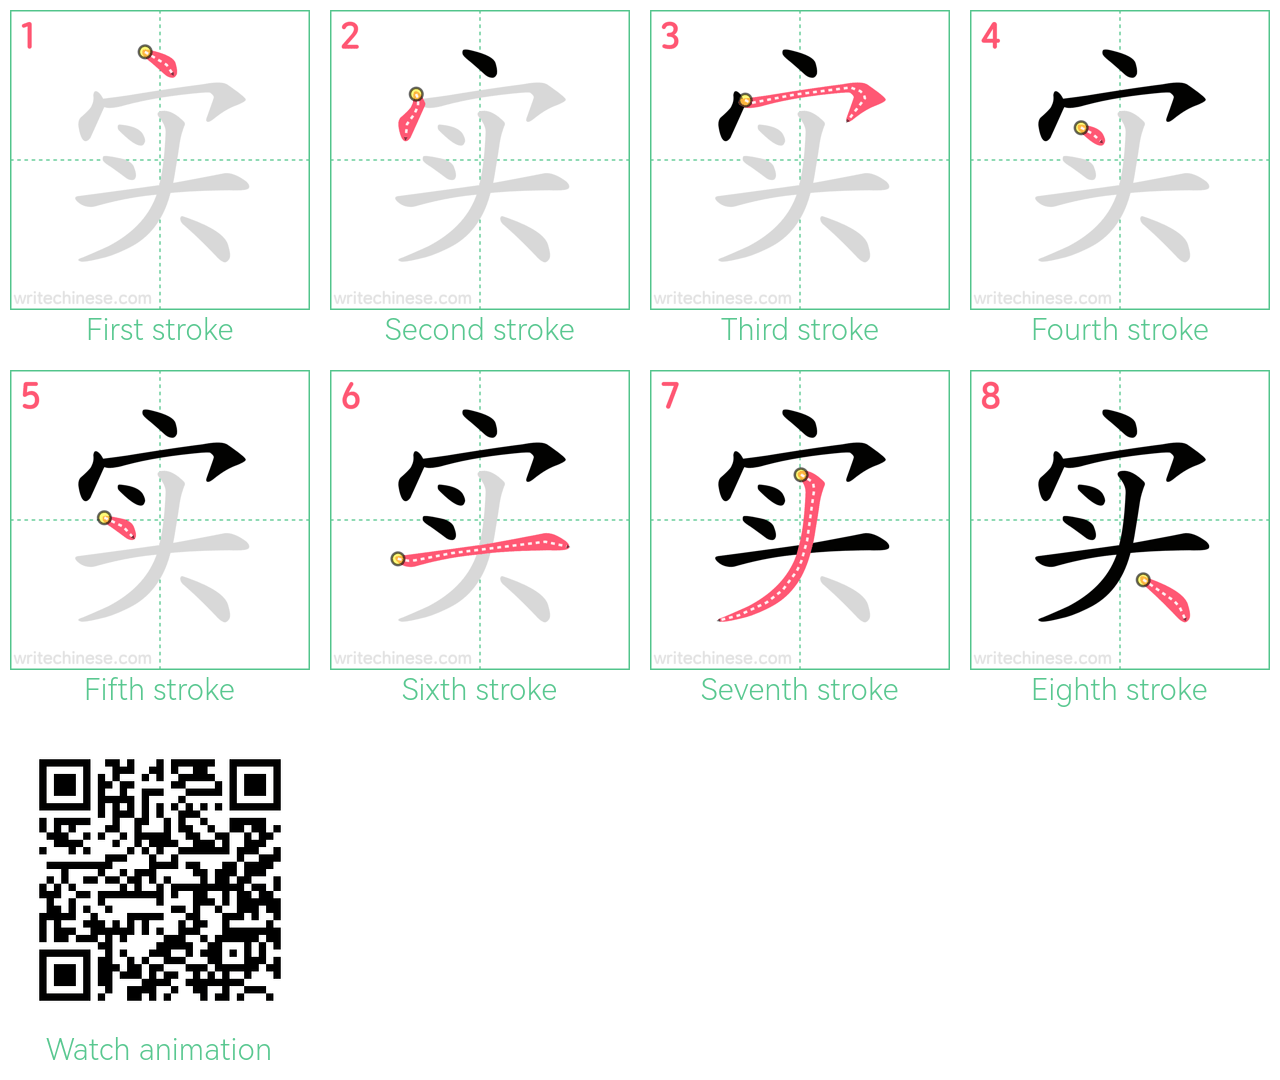 实 step-by-step stroke order diagrams